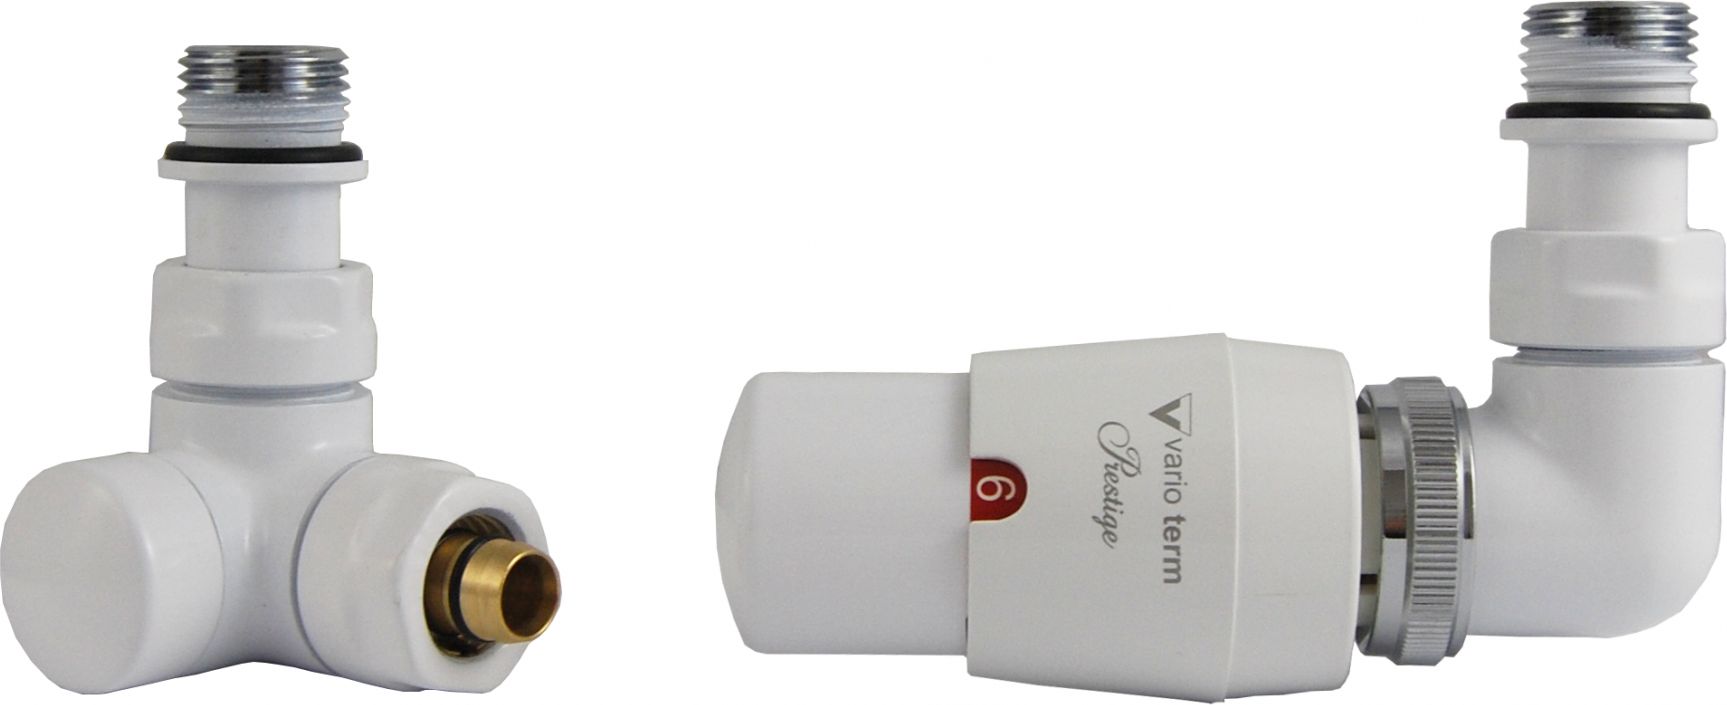 Varioterm Zestaw grzejnikowy Vision termostatyczny lewy bialy (VIGS0206CFK/L) VIGS0206CFK/L (5902249829075)